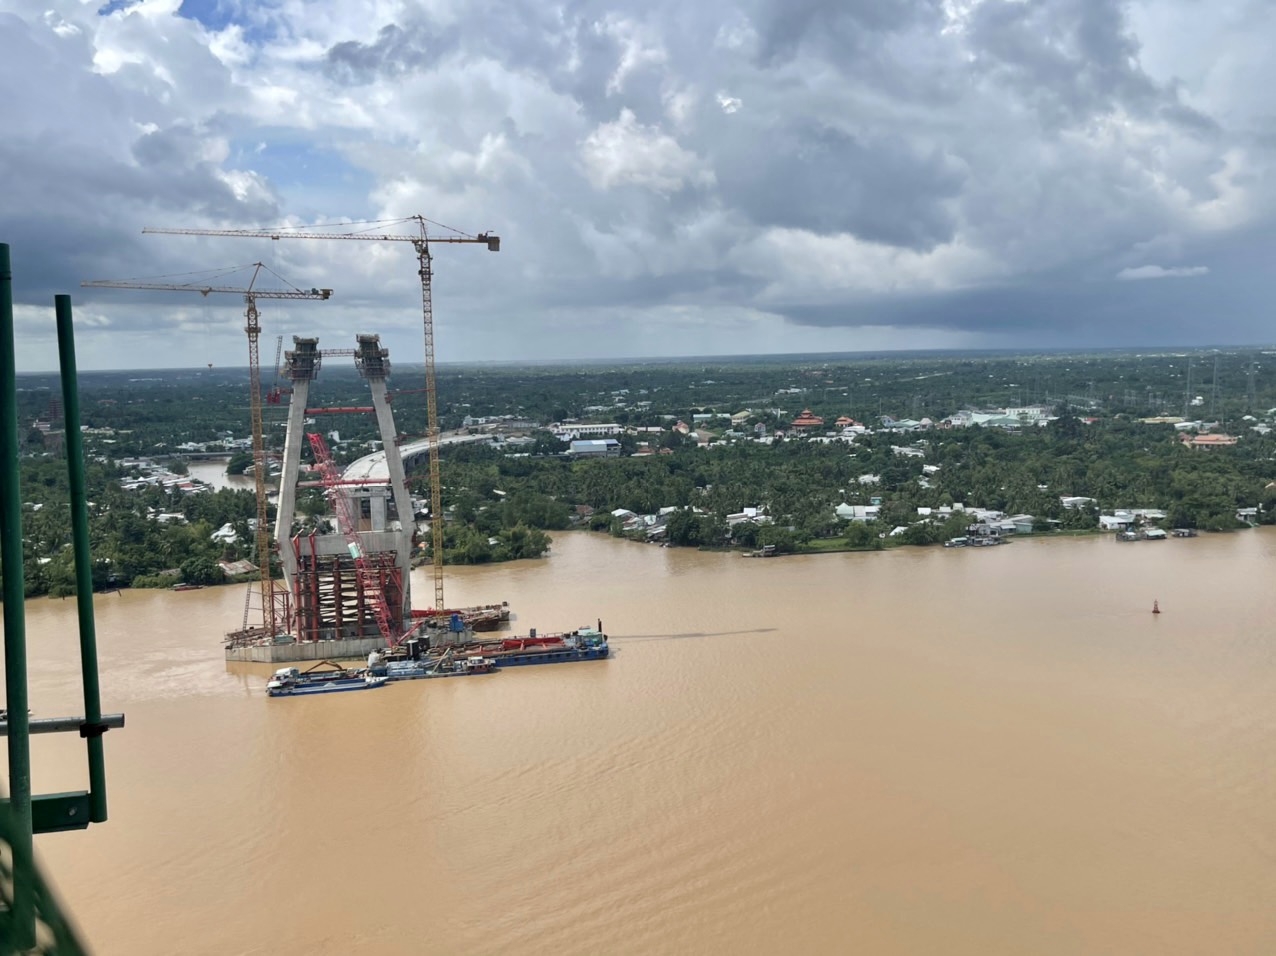 Nỗ lực tìm công nhân rơi sông mất tích khi thi công cầu Mỹ Thuận 2  - Ảnh 2.